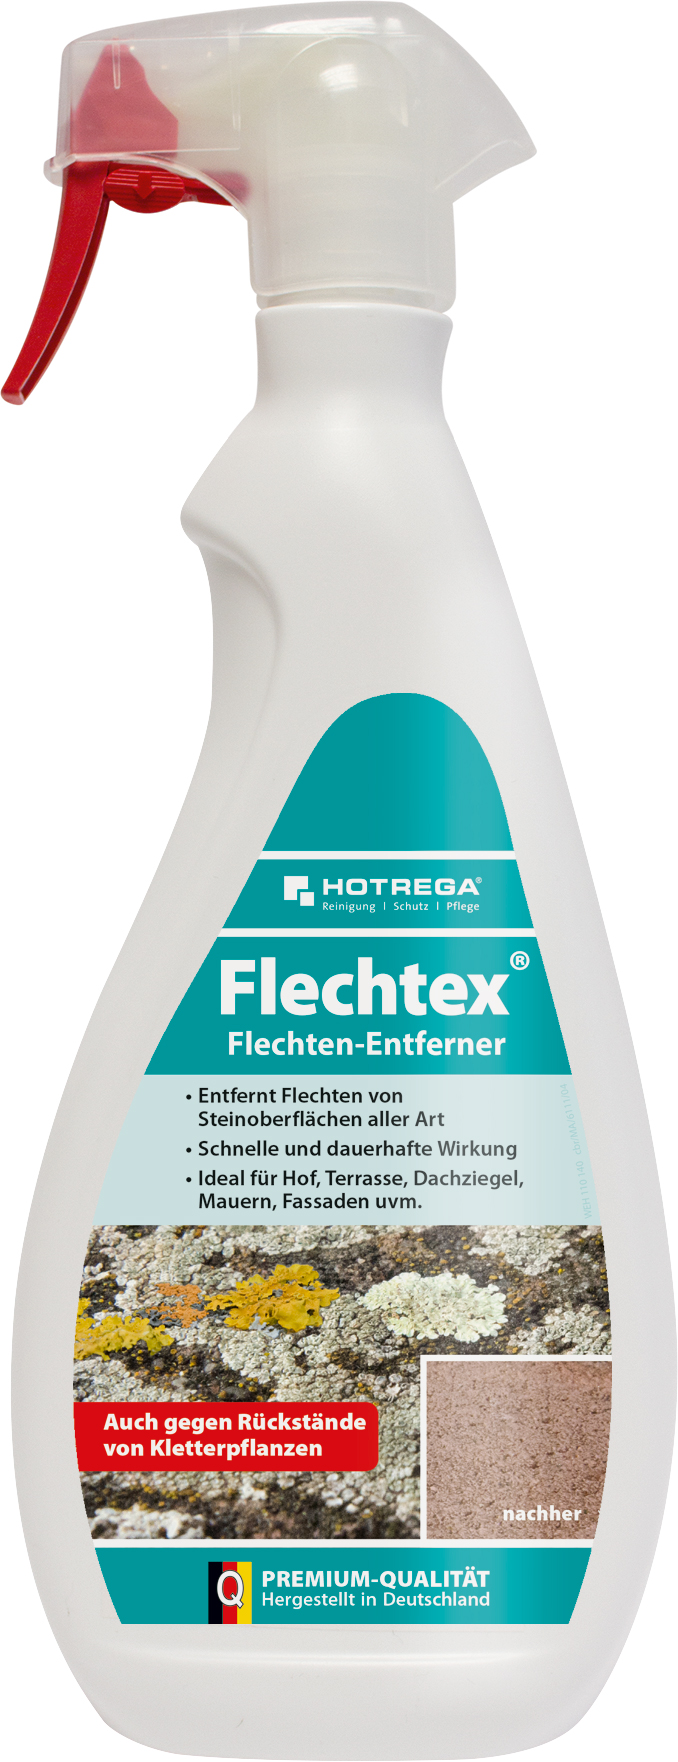 HOTREGA Flechtenentferner Flechtex 750ml 